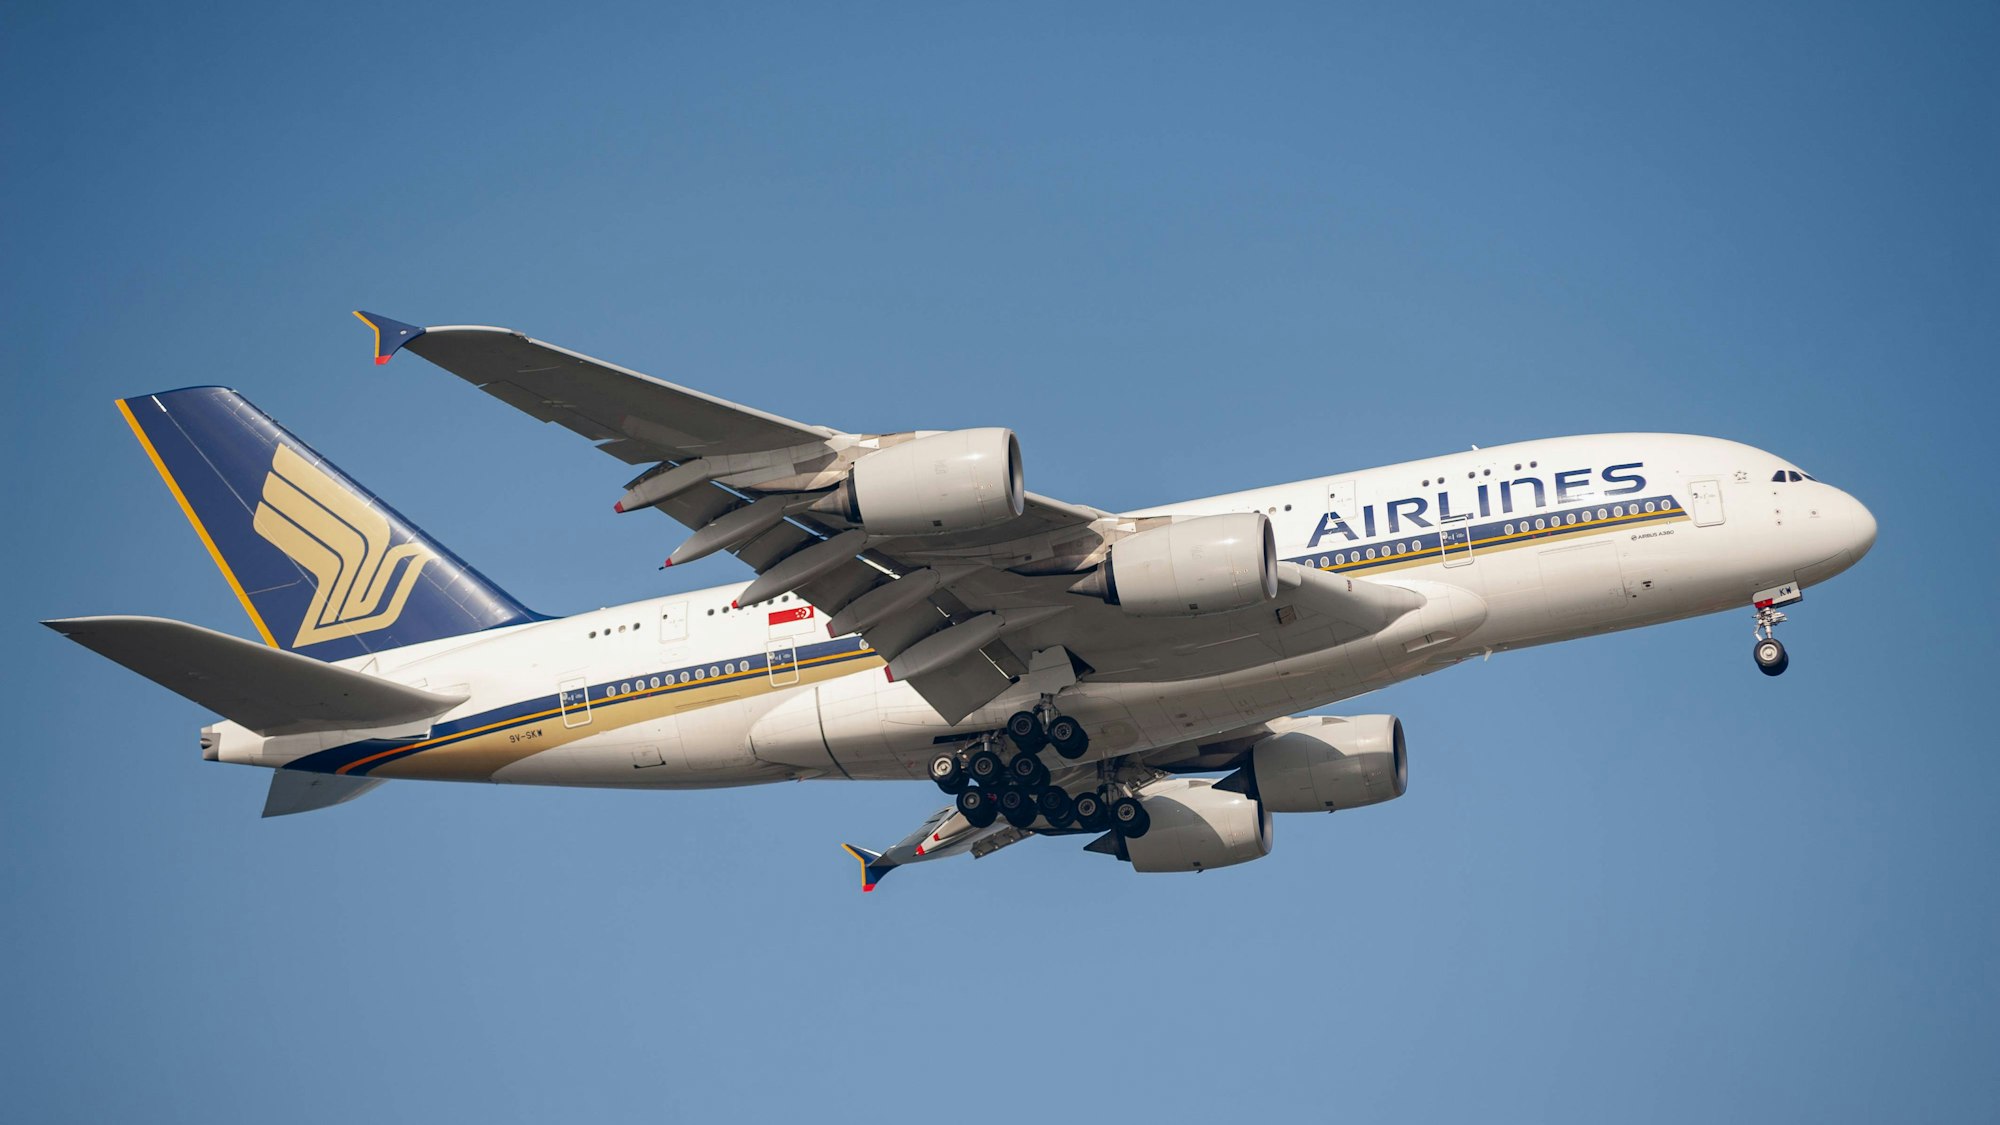 Ein Airbus A380 von Singapore Airlines kurz nach dem Start. Das Flugzeug ist markant in blau und gold lackiert. (Symbolbild)